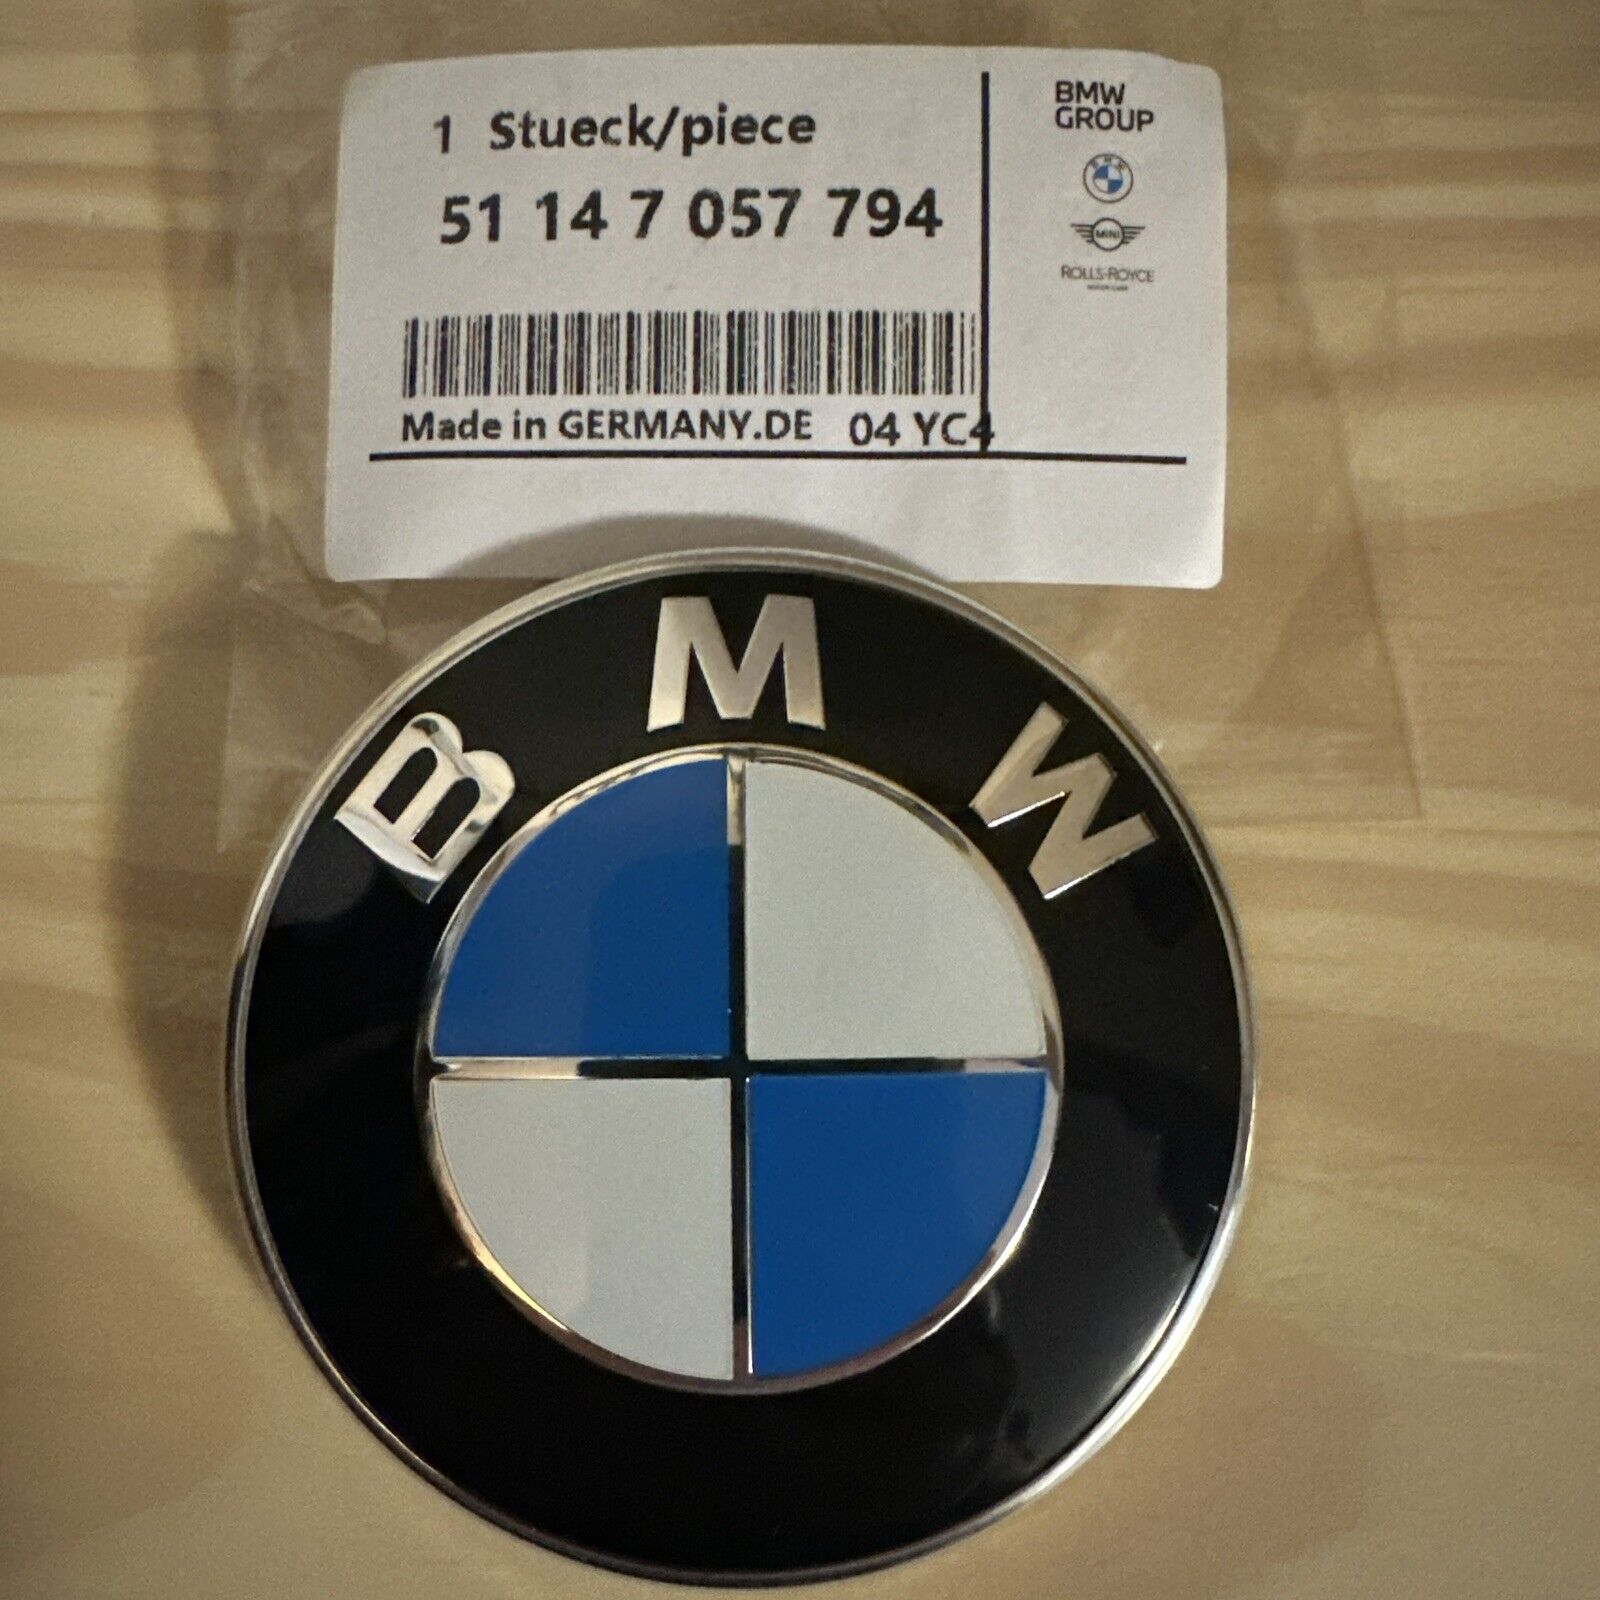 BMW 528i 535i 550i 640i 650i F10 F06 F07 Front Hood Logo Emblem Roundel Badge